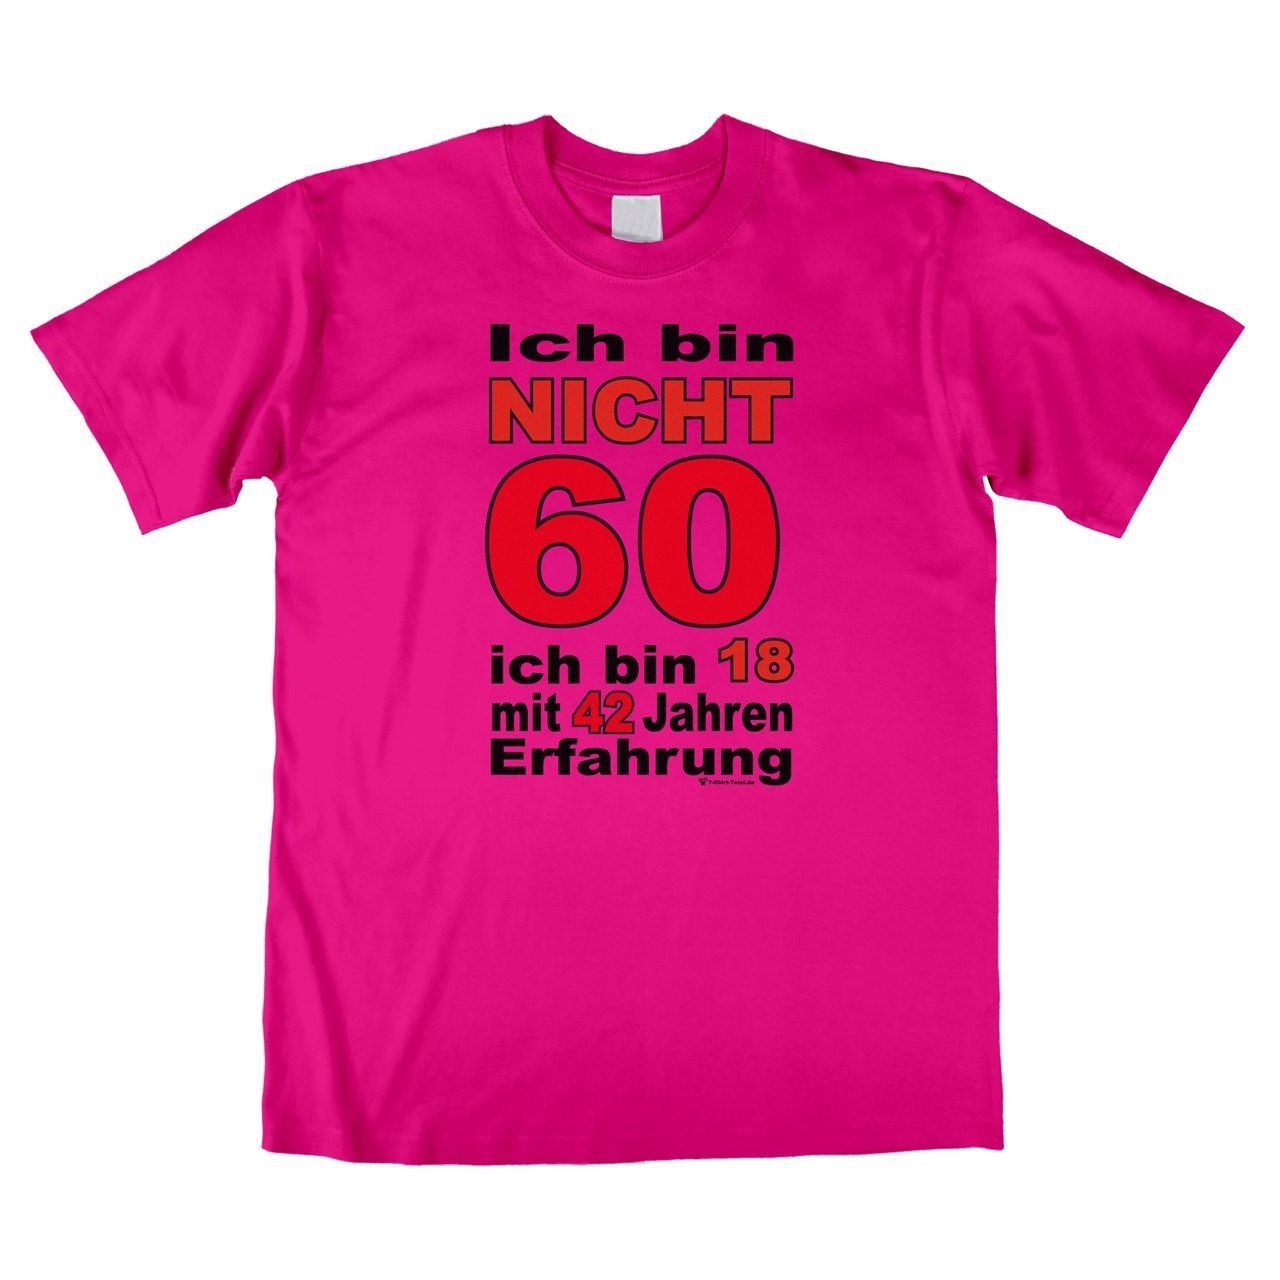 Bin nicht 60 Unisex T-Shirt pink Large